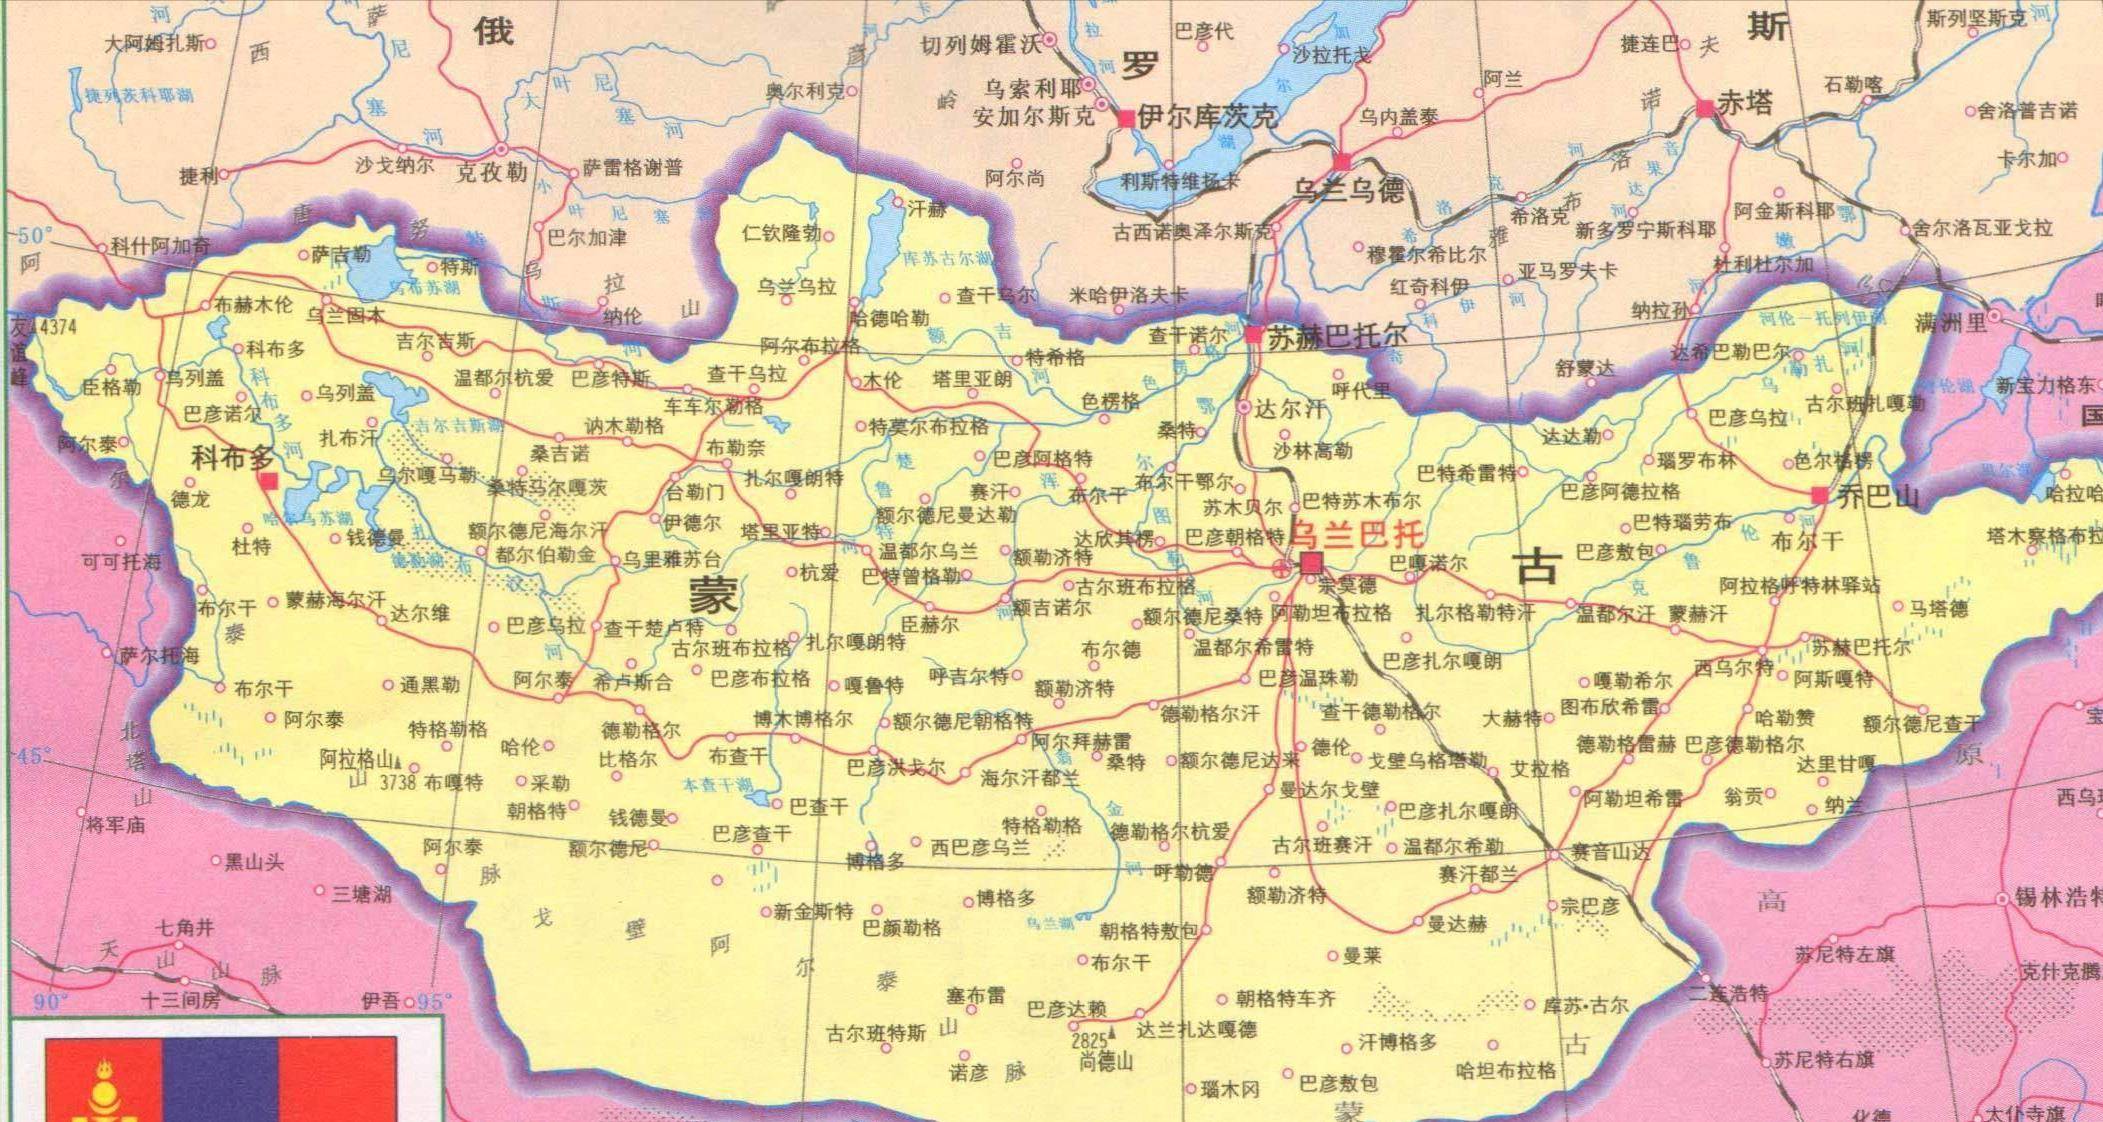 内蒙古,外蒙古,都以黄金家族后裔自居,谁才是蒙古的正统?